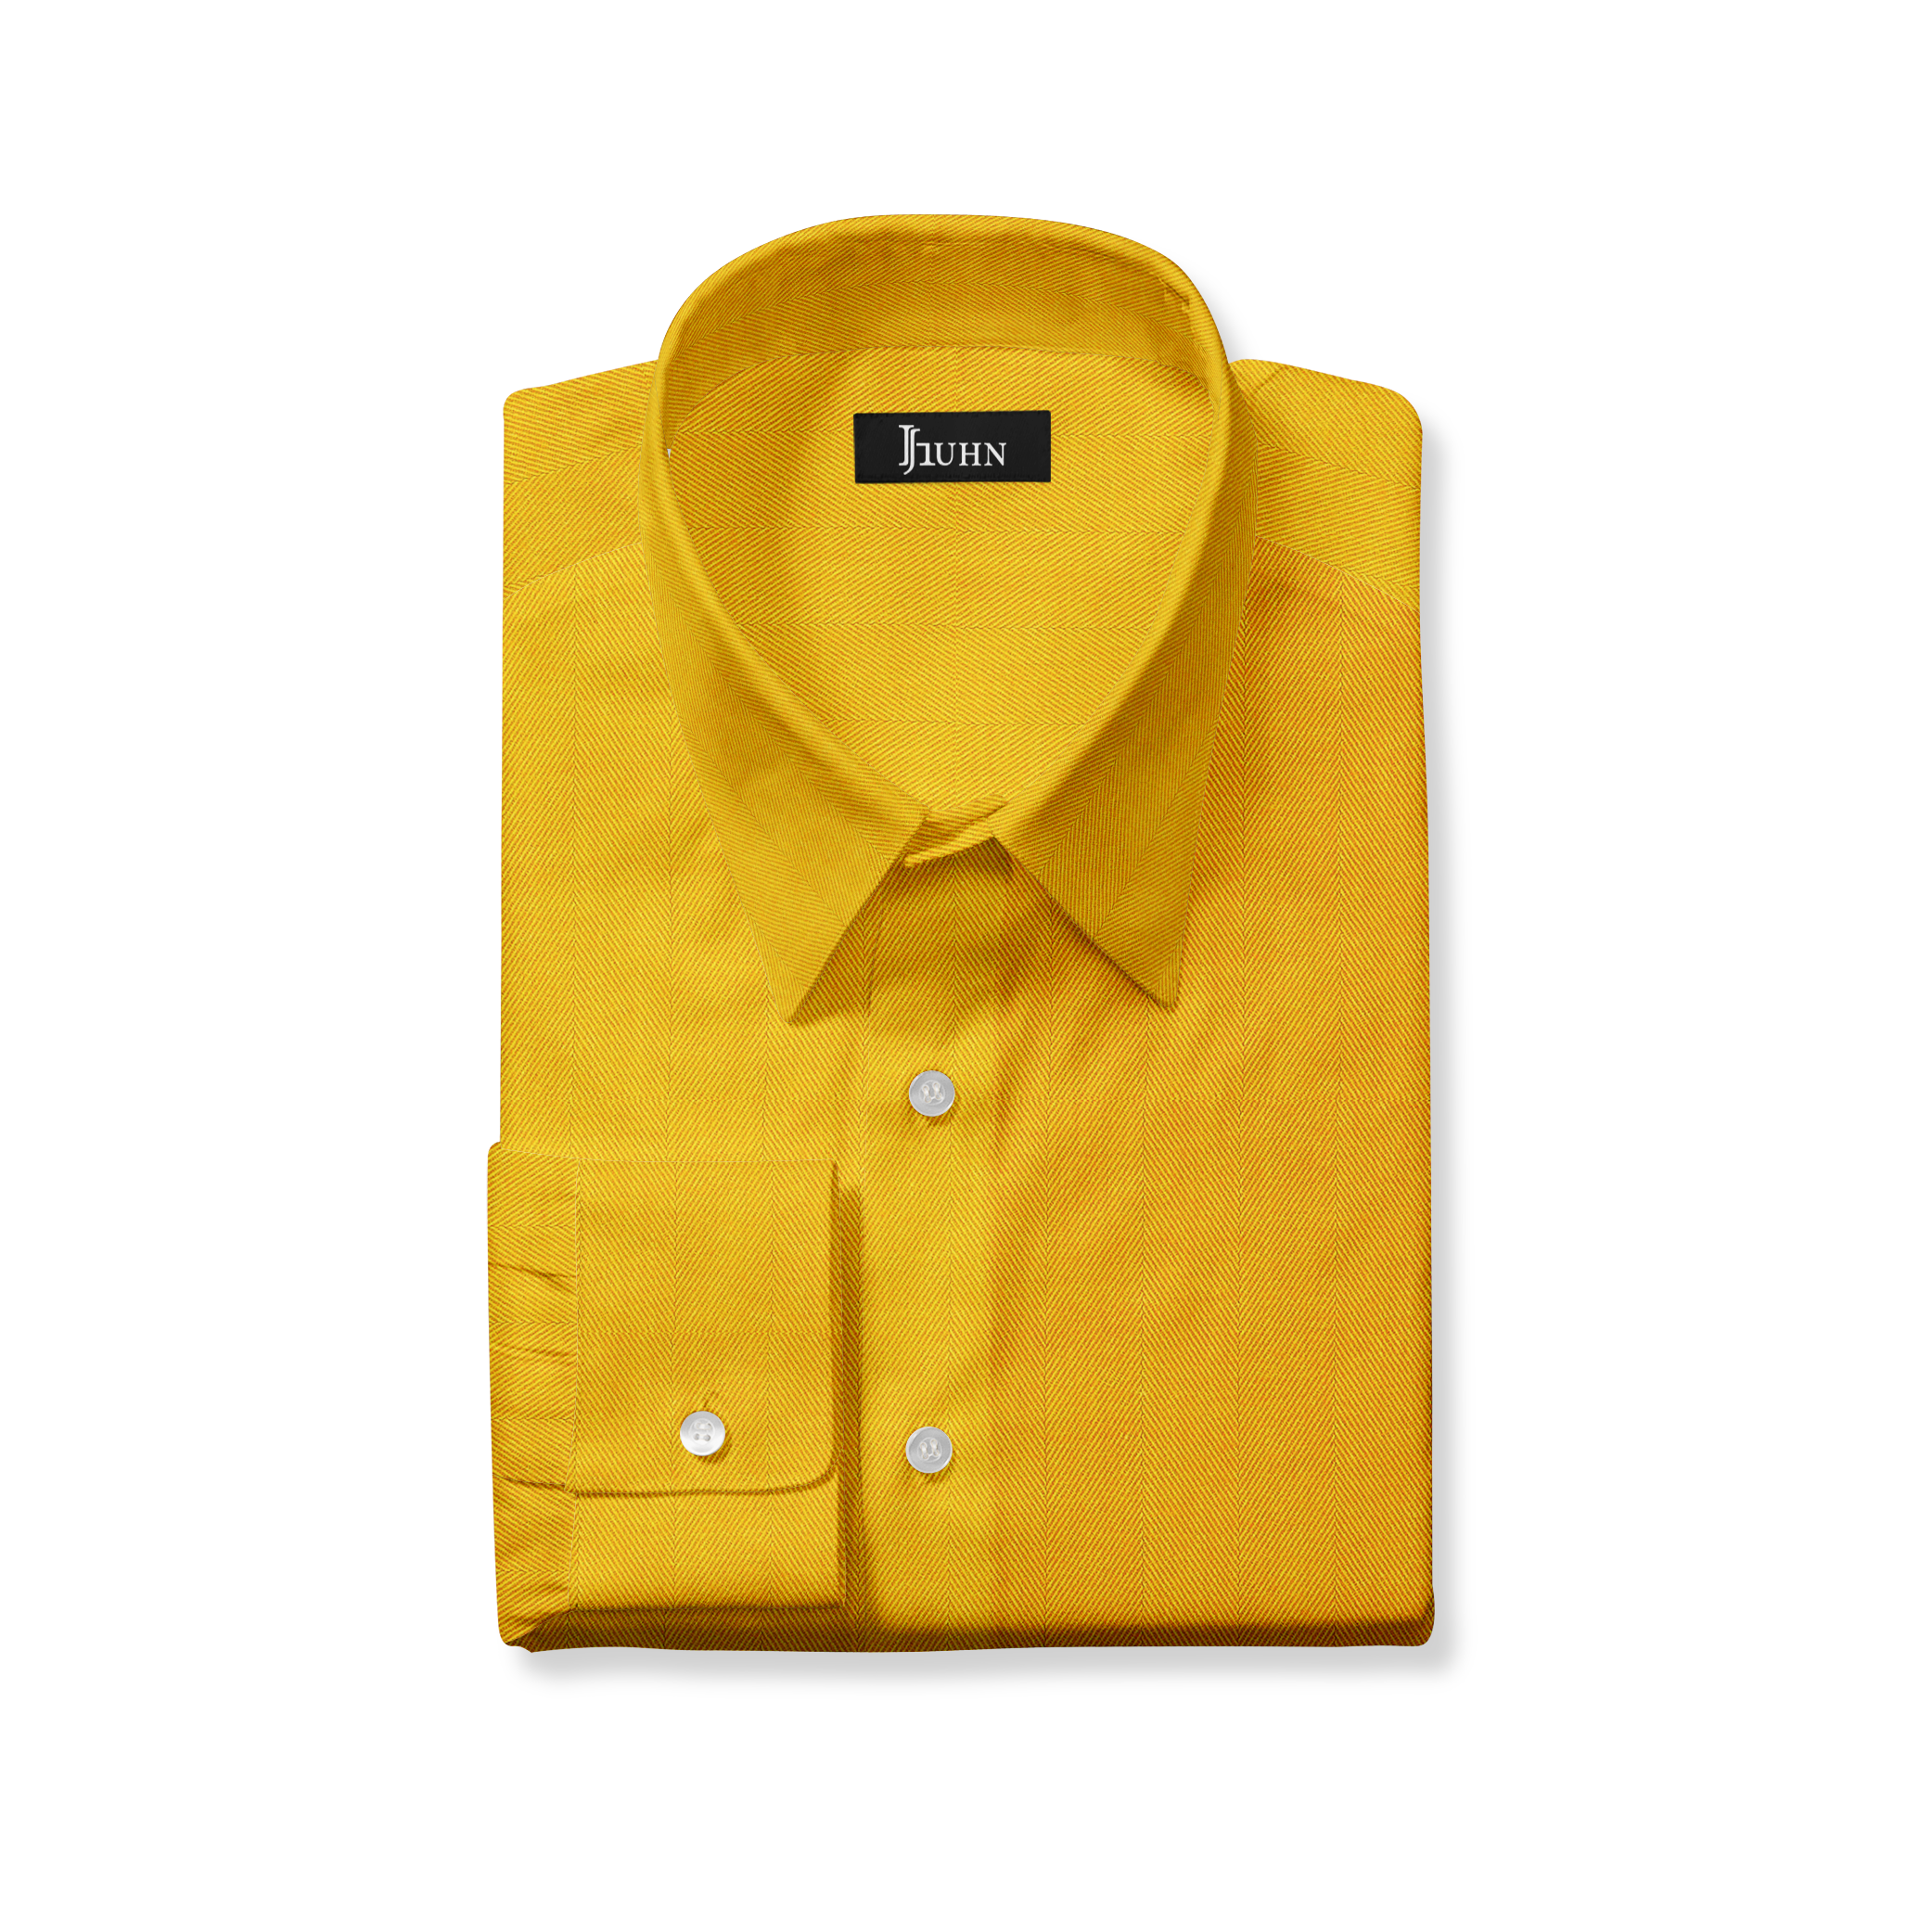 https://juliehuhn.com/cdn/shop/products/JHUHN-Shirts-yellow.png?v=1664921278